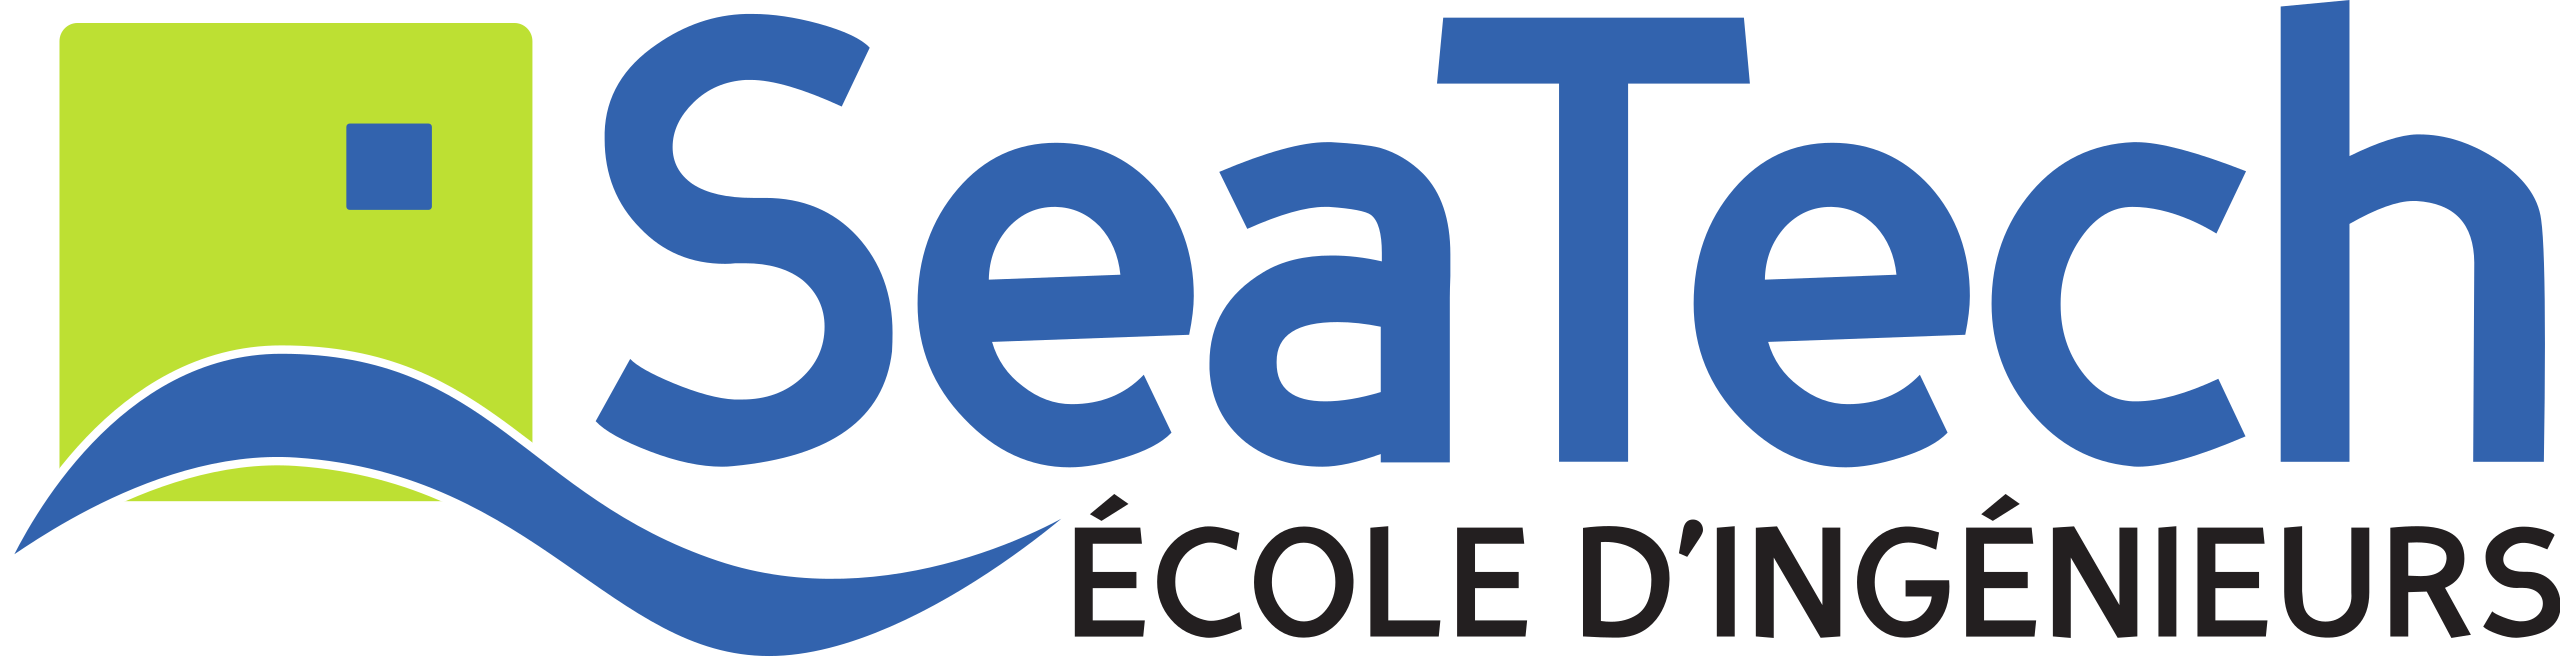 logo de l'école d'ingénieur Seatech